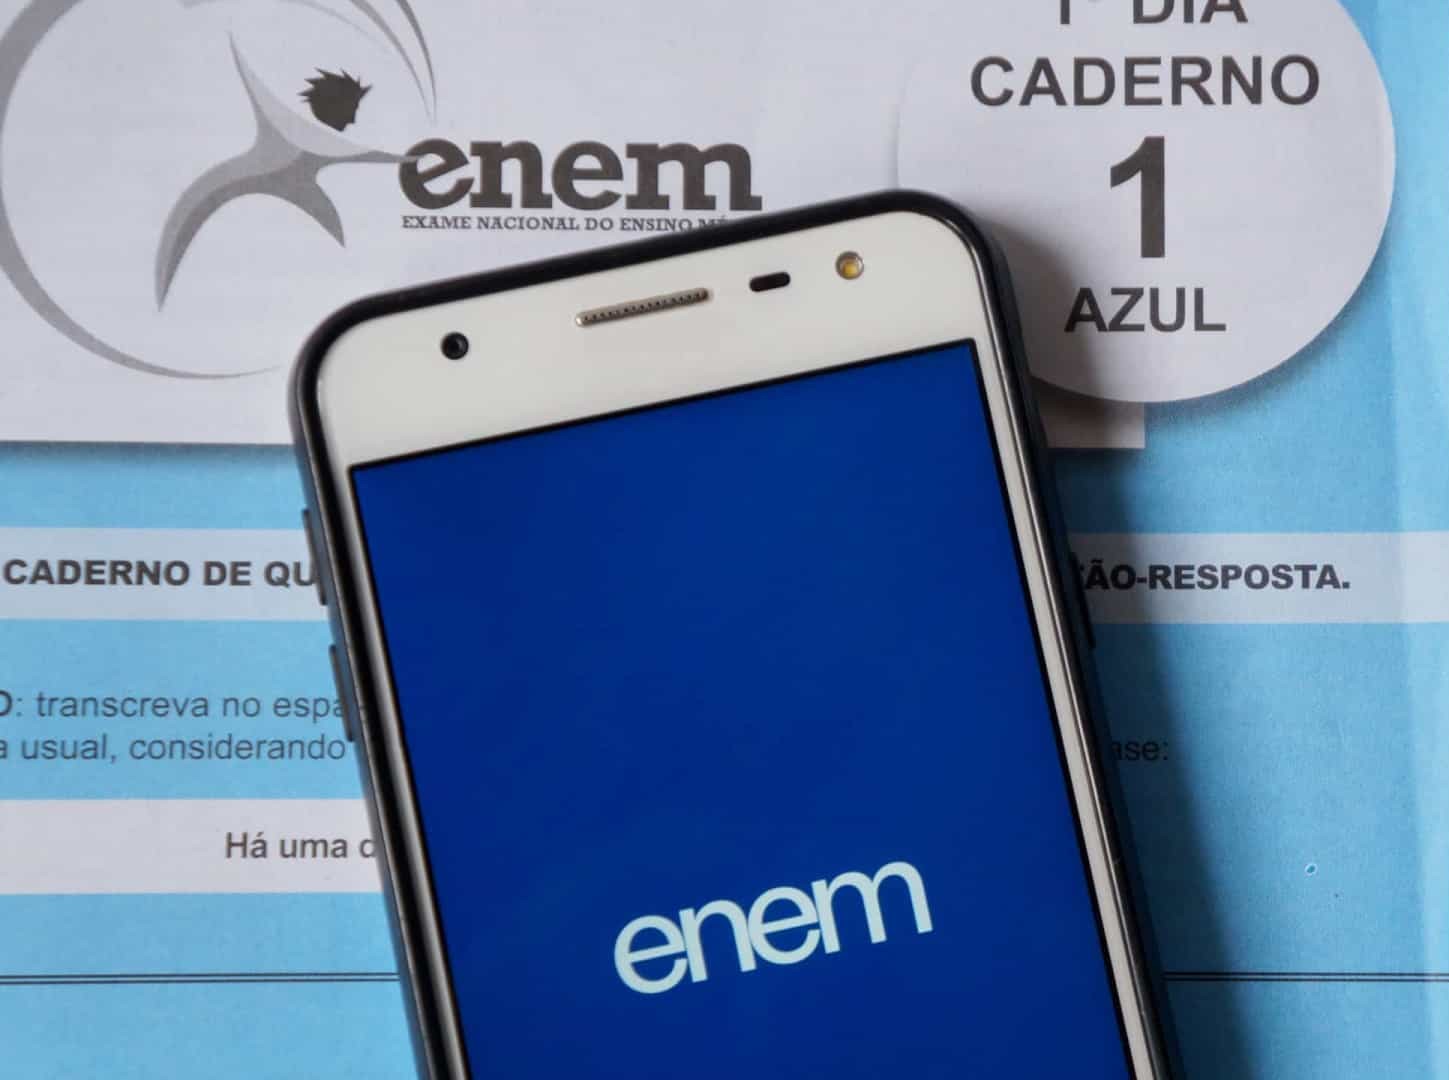 Última semana para pedido de isenção da taxa de prova do ENEM 2021